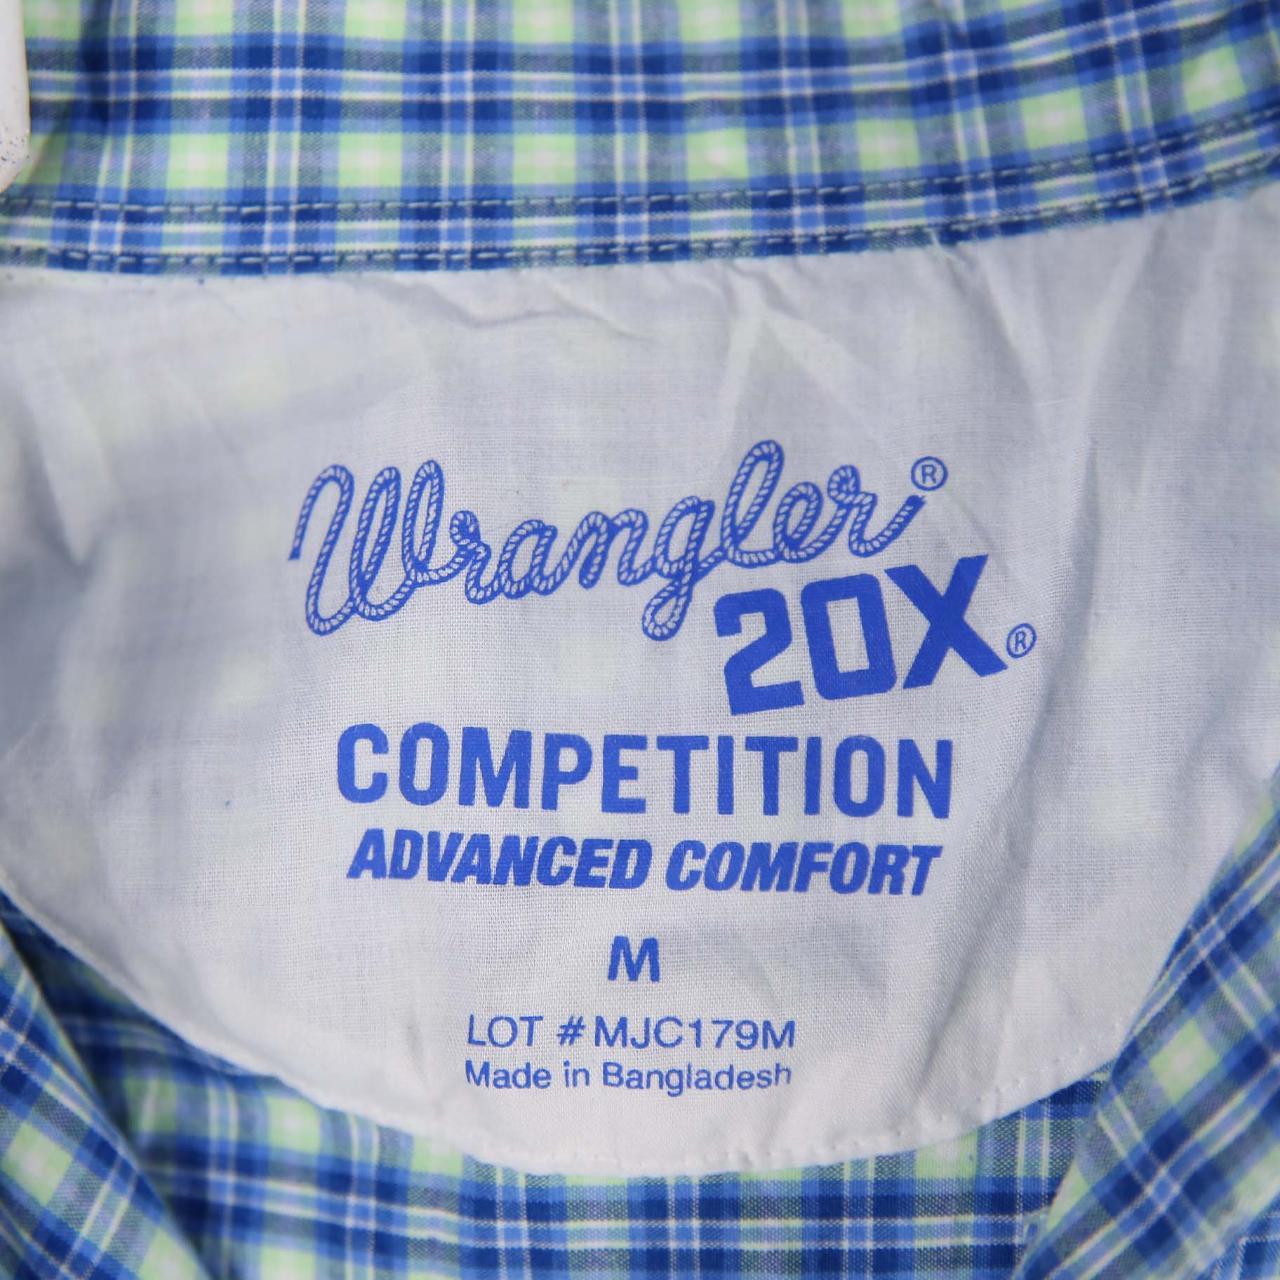 Vintage Wrangler Shirt Wrangler 90's... - Depop